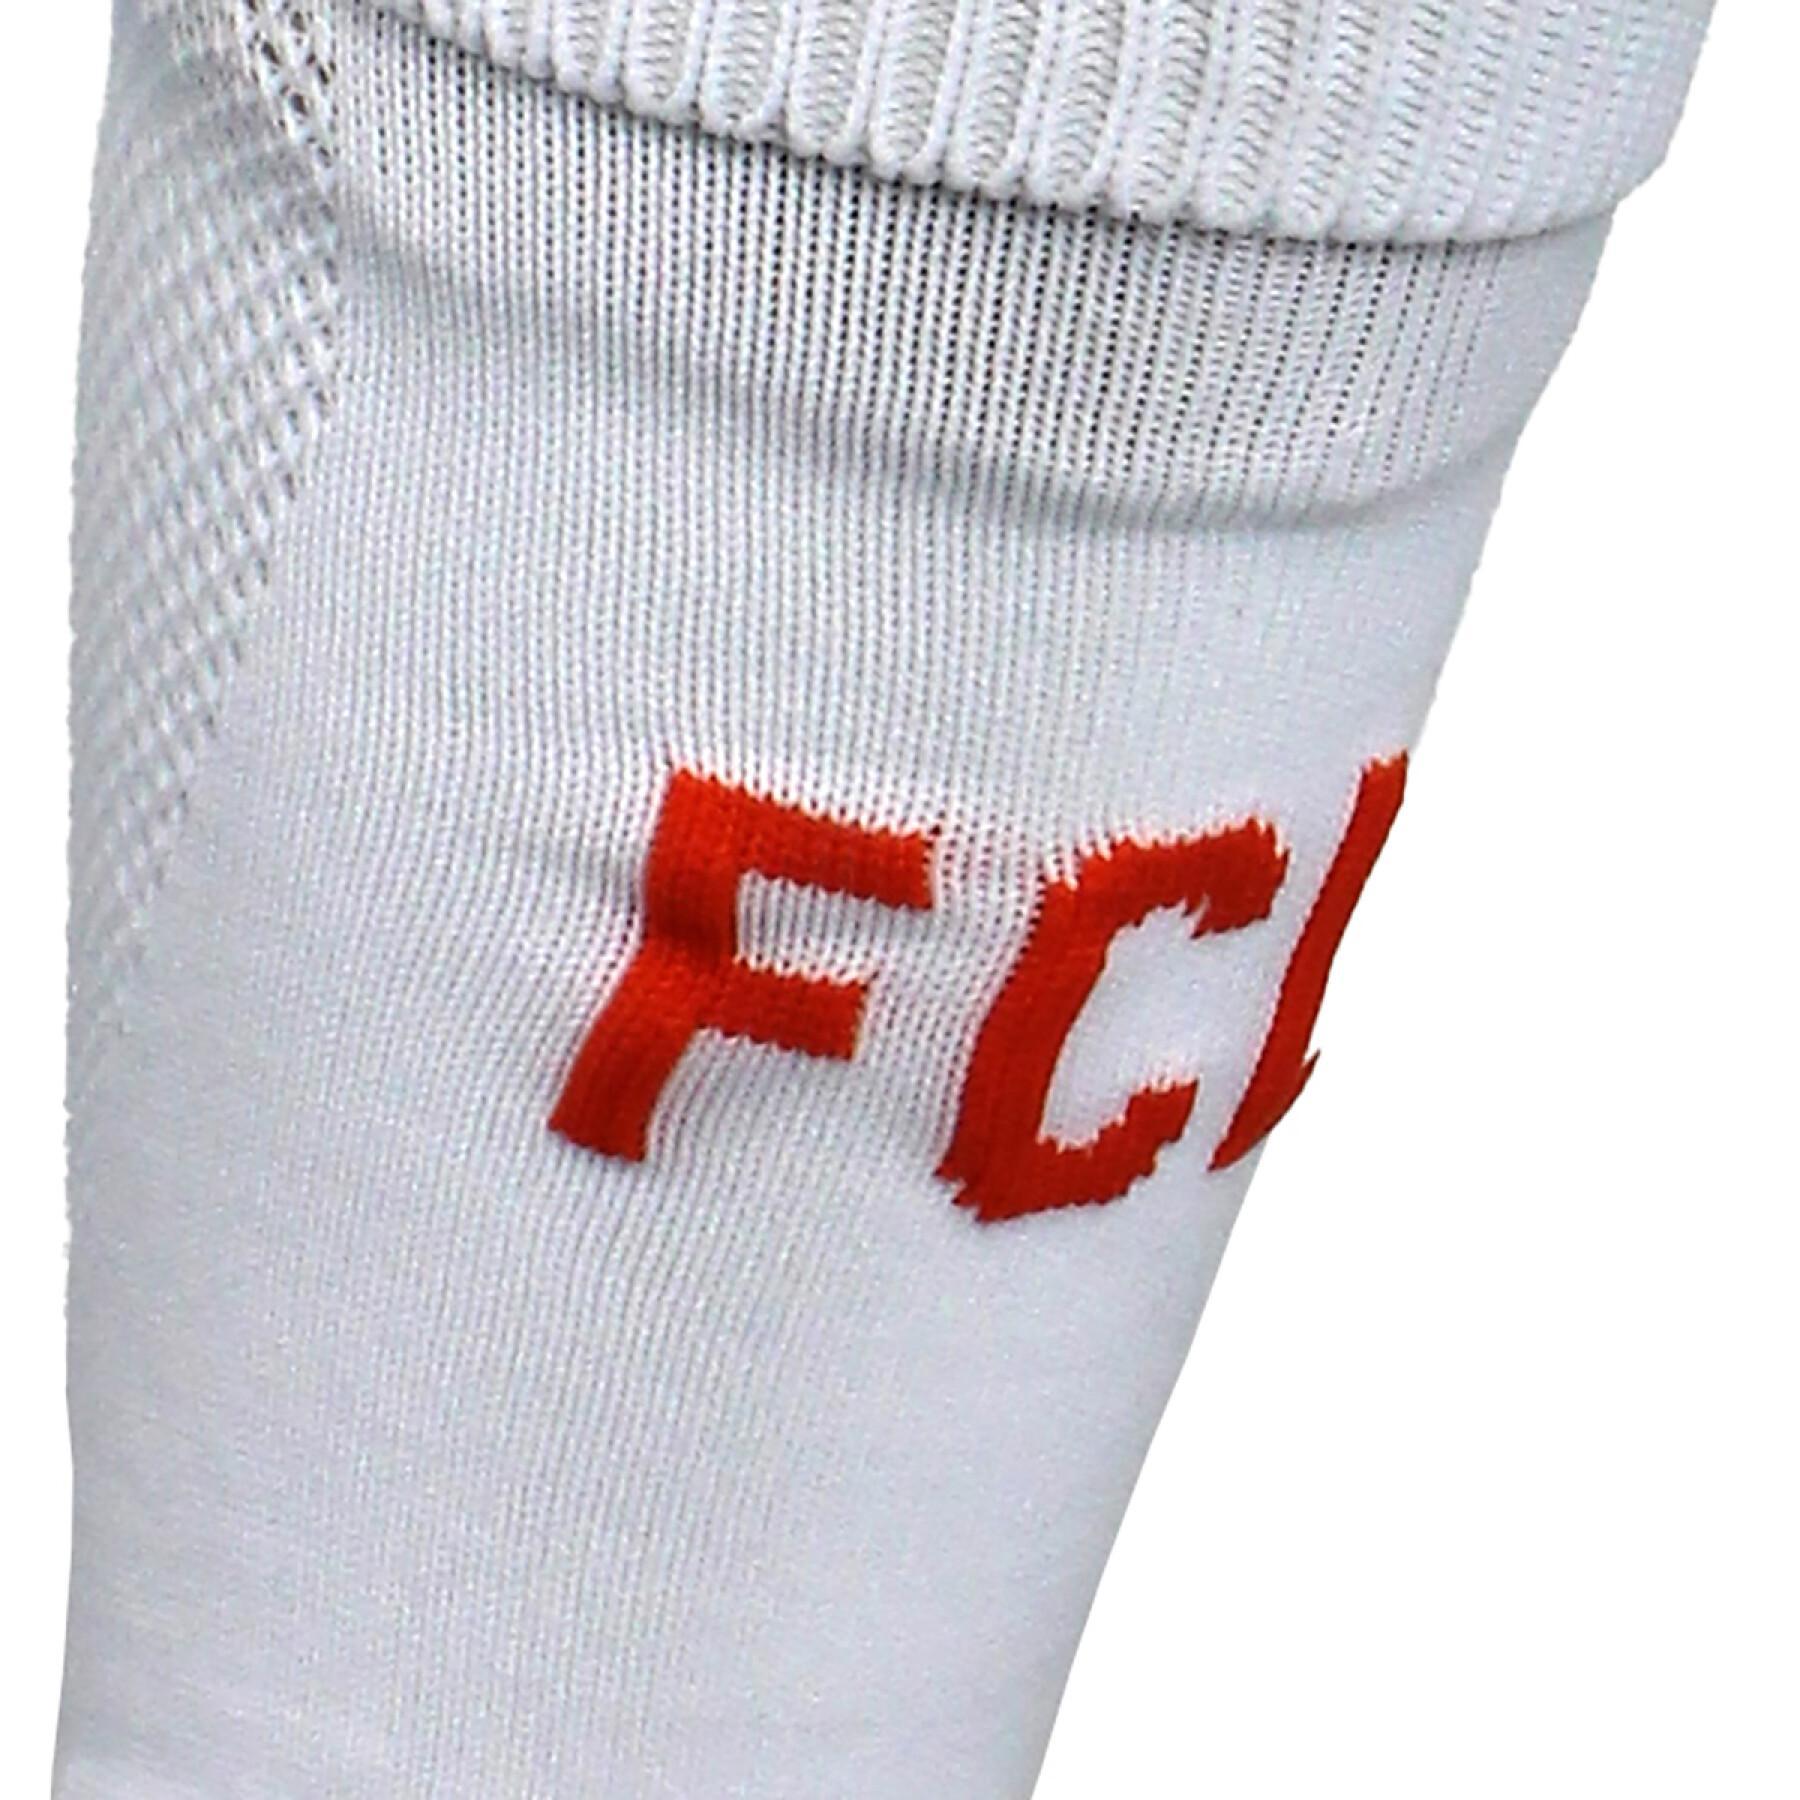 Socken für draußen fc Lorient 2021/22 spark pro